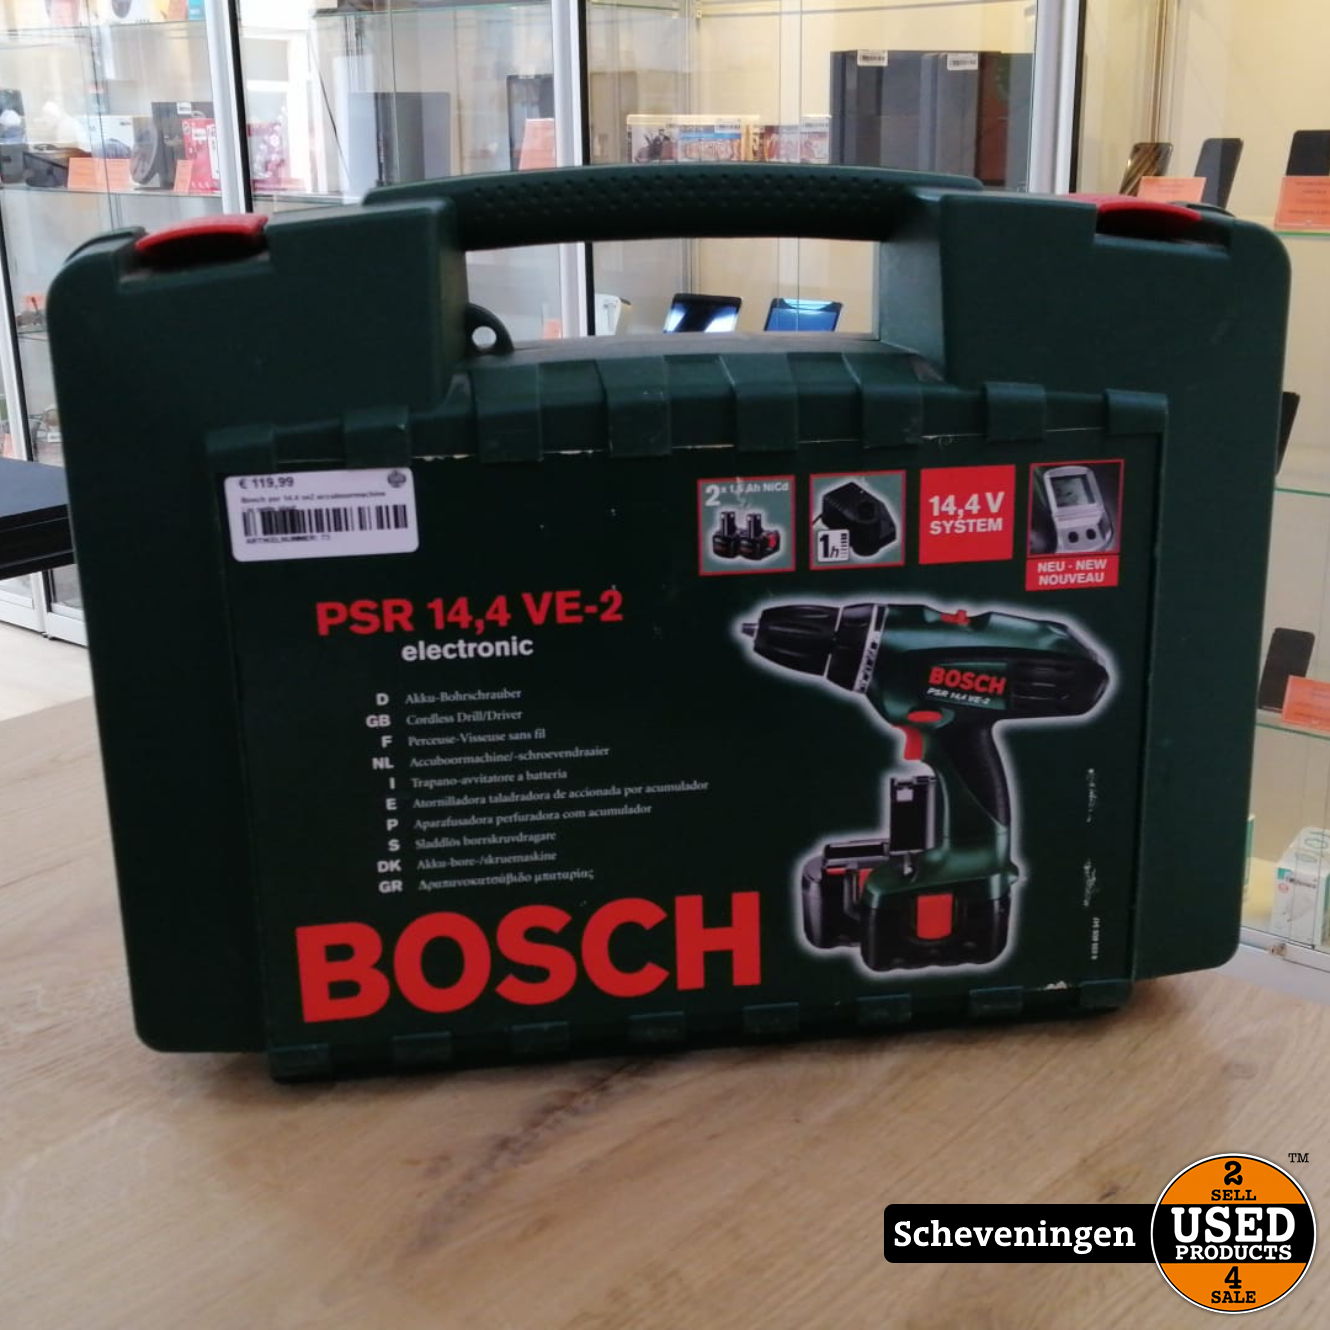 Hoeveelheid geld Leninisme mager Bosch PSR 14.4 VE2 Accuboormachine | in nette staat - Used Products  Scheveningen